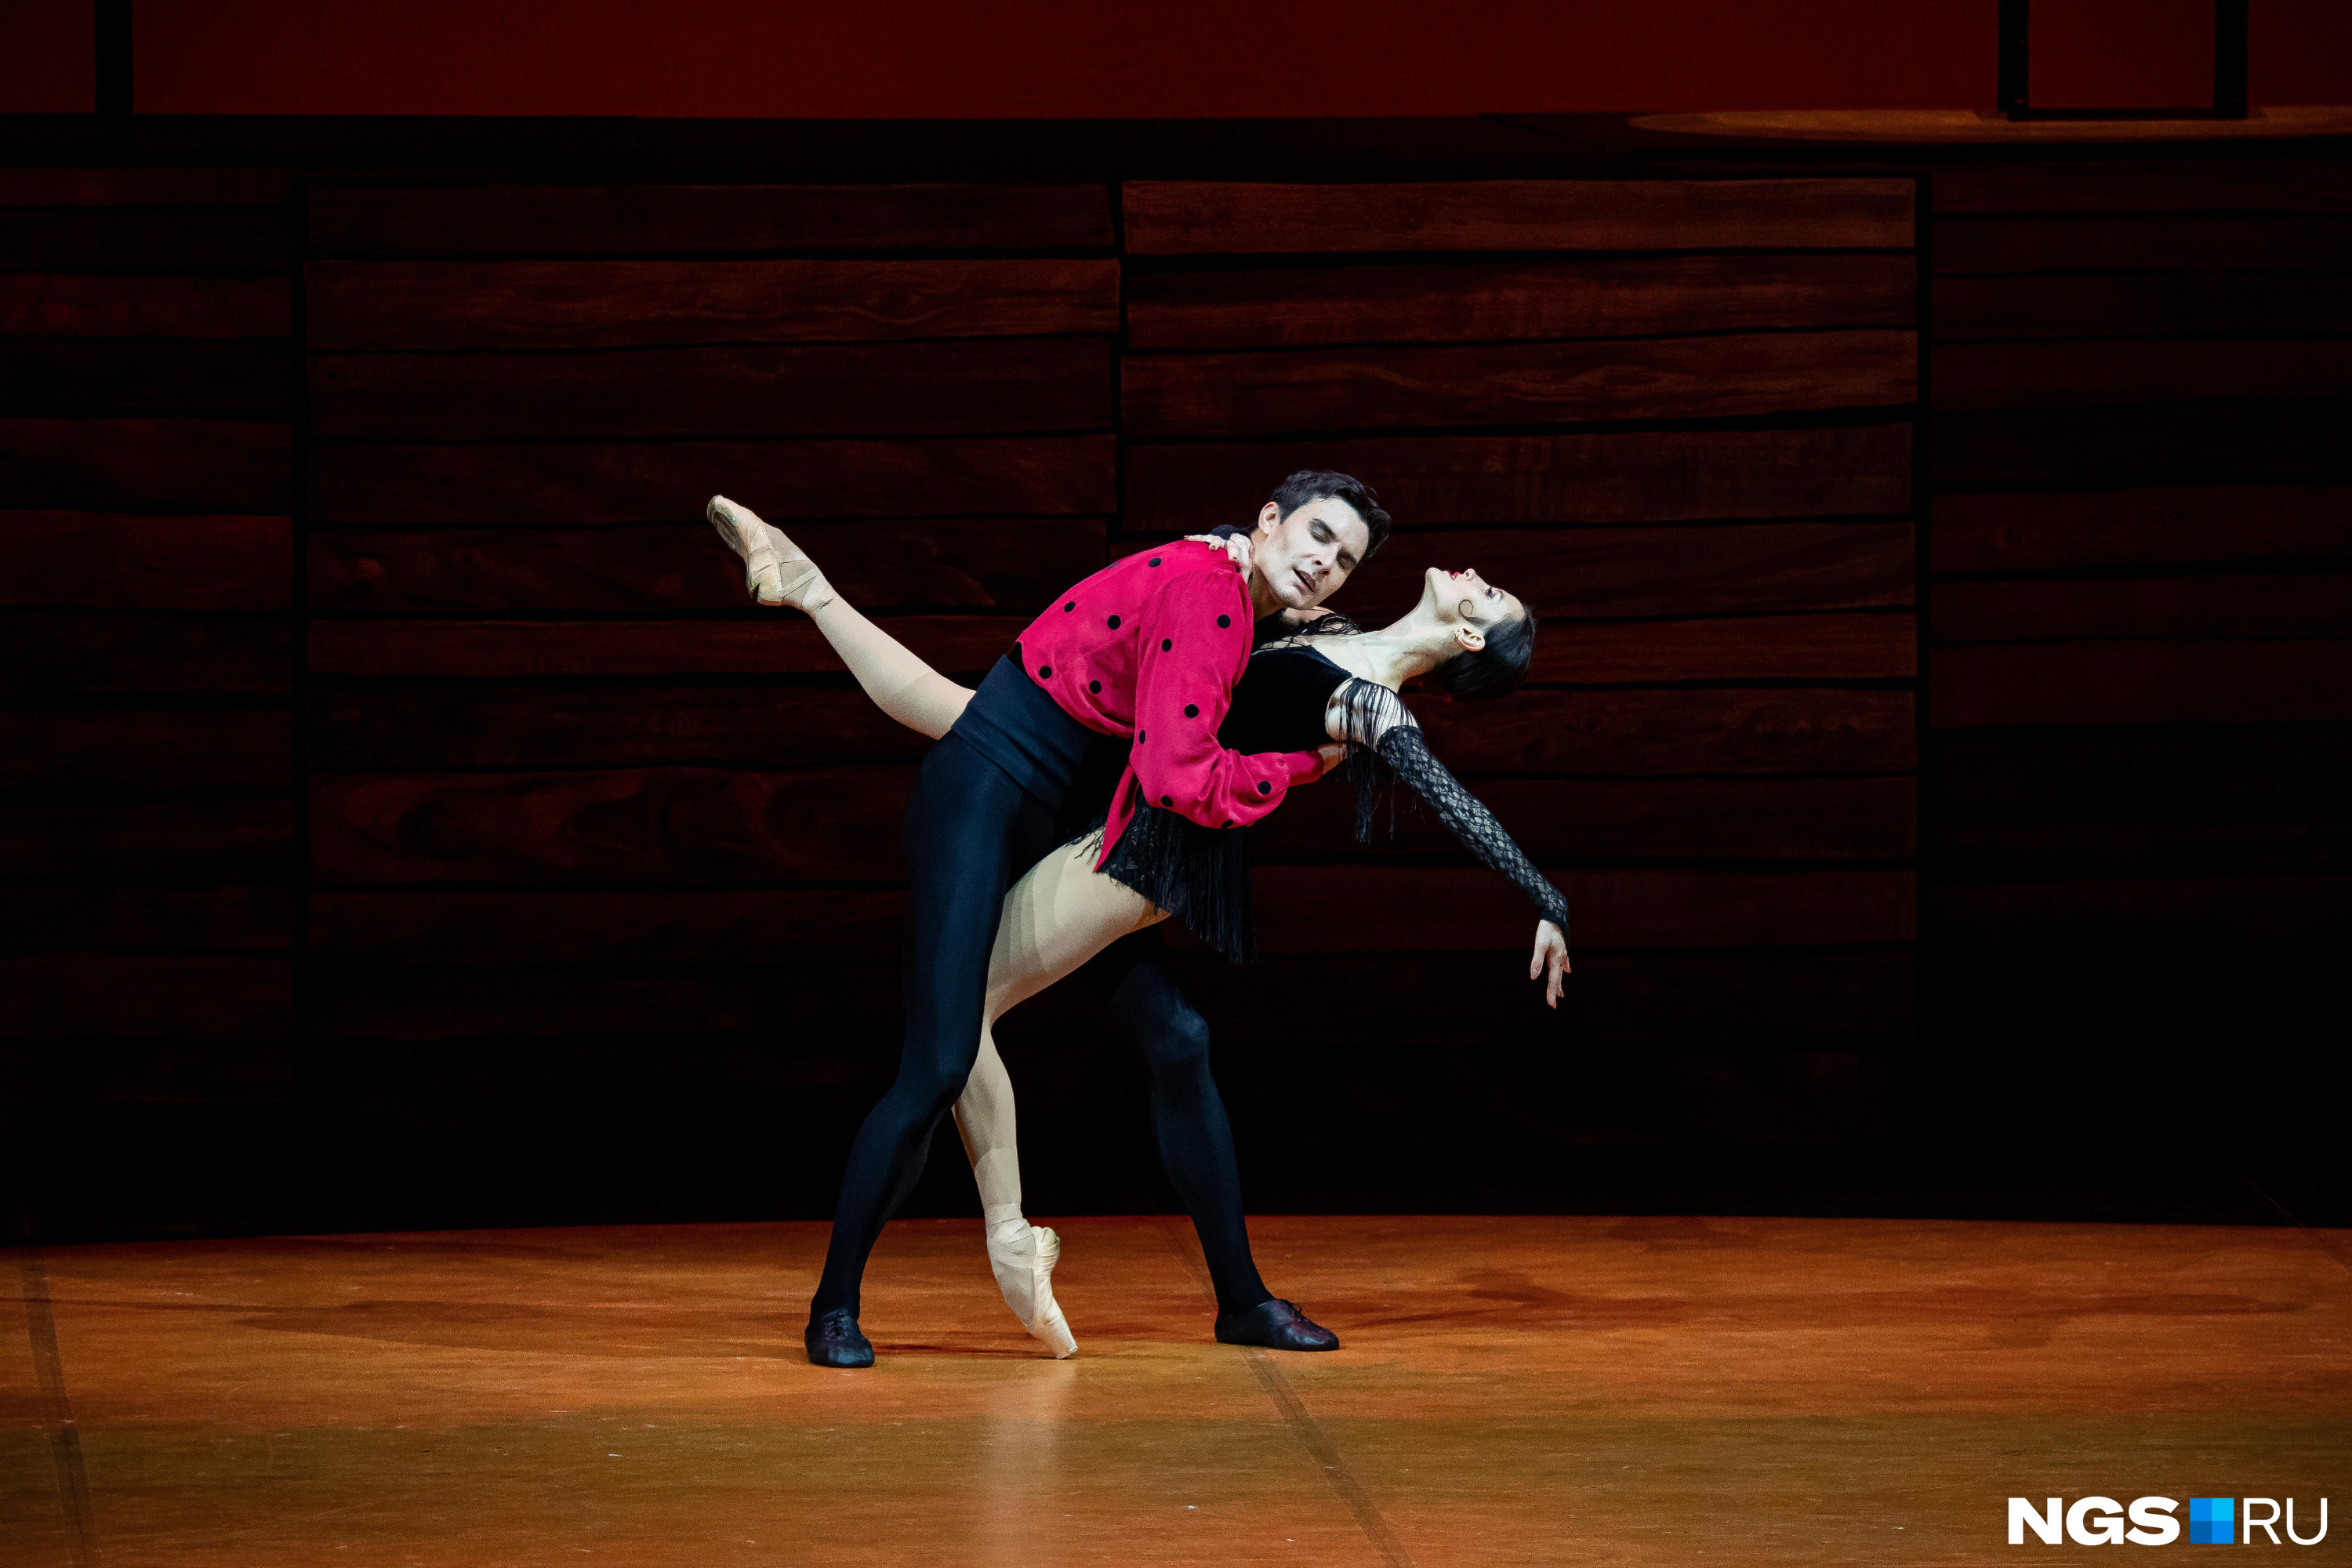 Балет и Опера :: Просмотр темы - Балетная тематика в изобразительном искусстве и фотографии